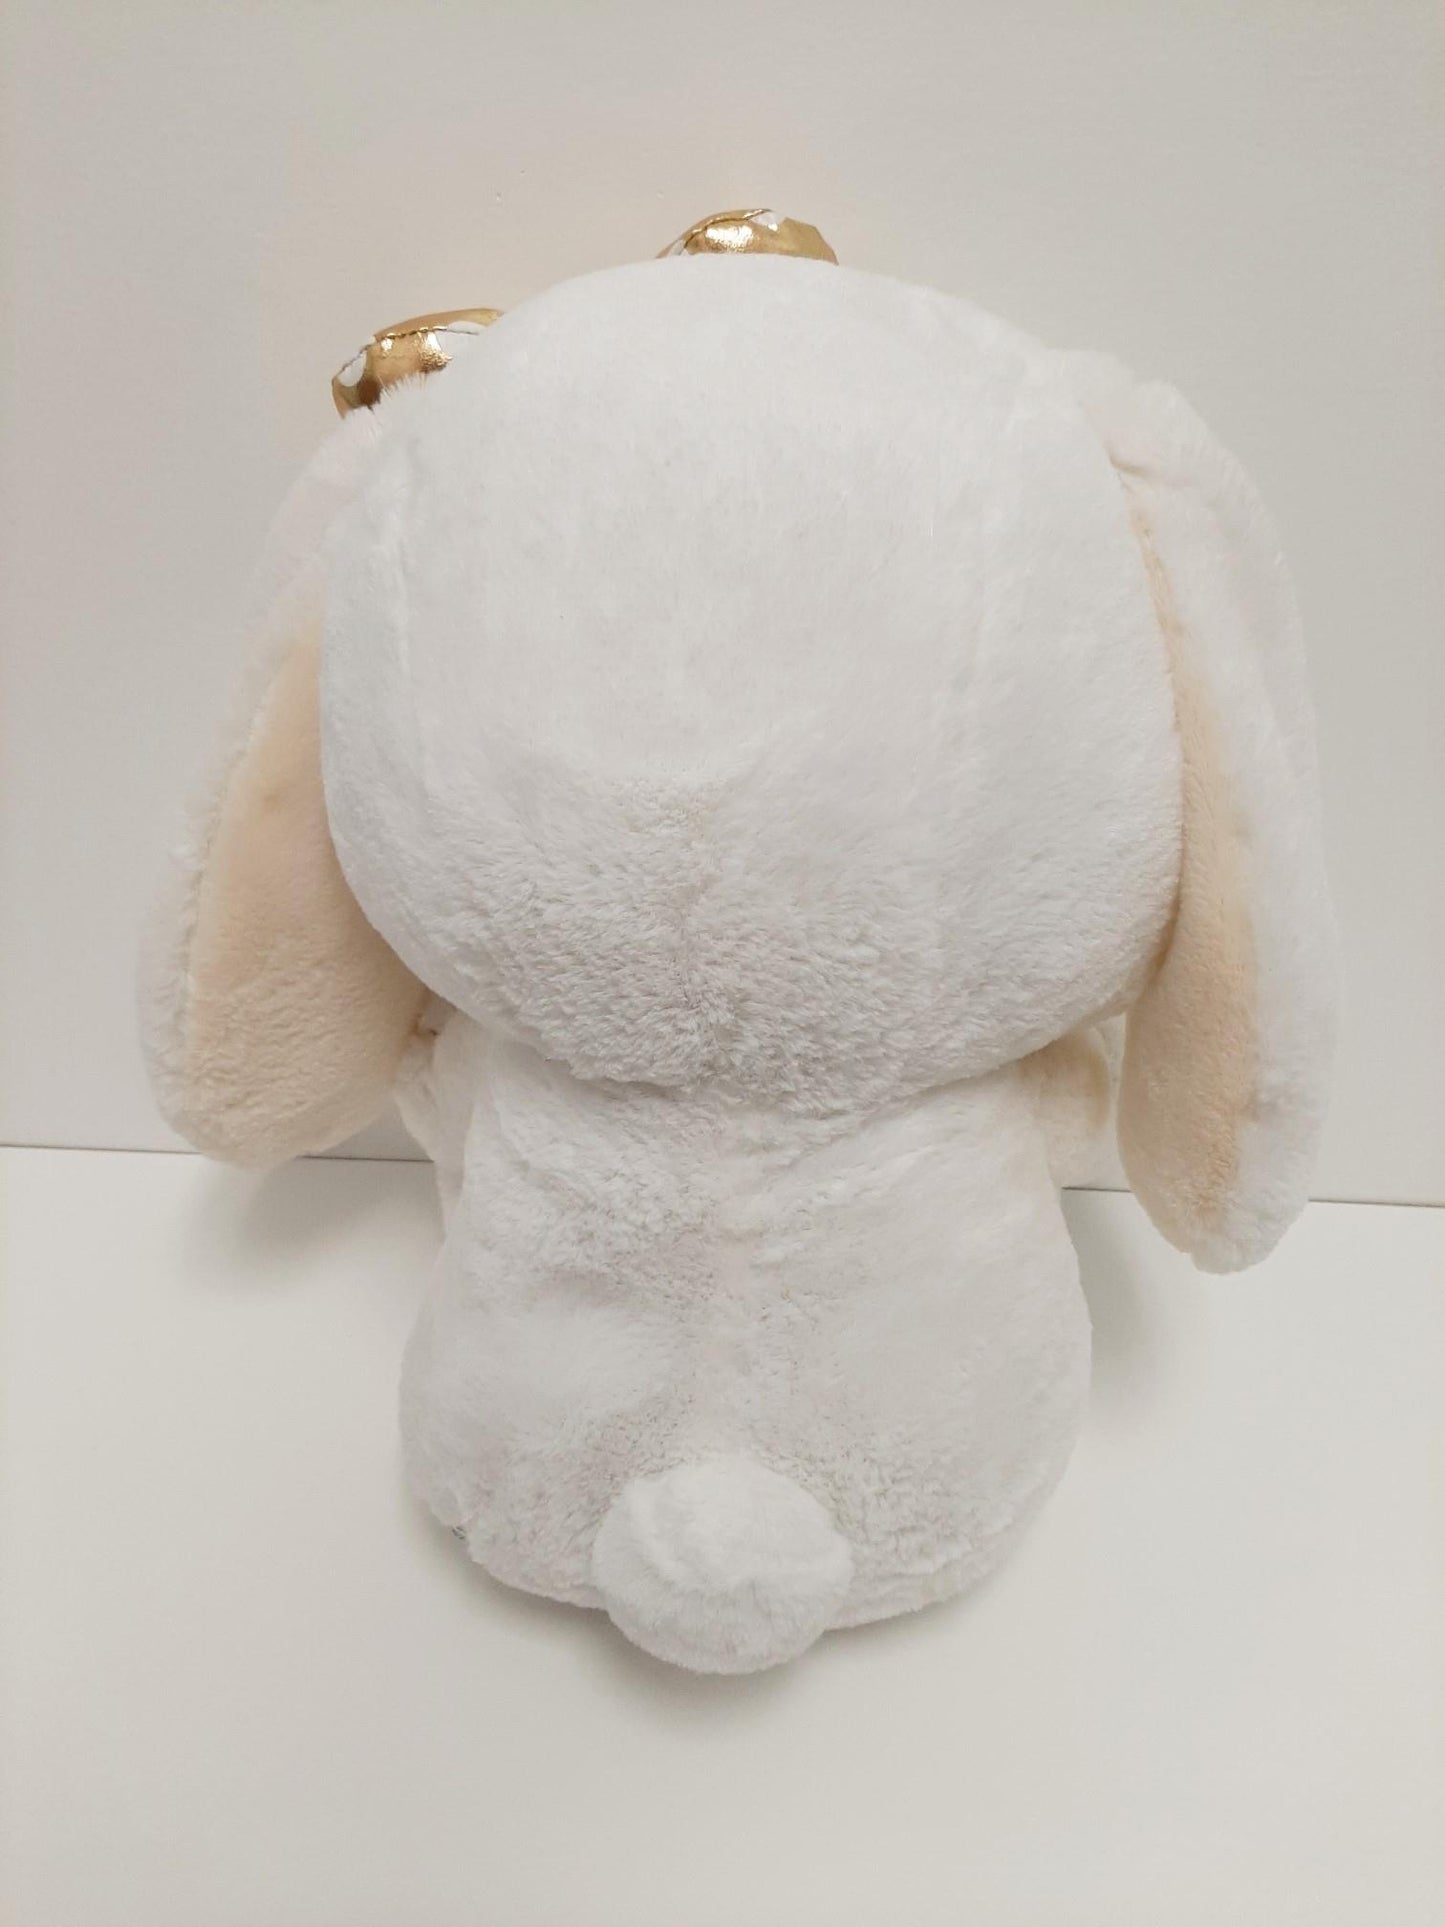 Amuse: White Bunny Gold Polka-Dot Bow 16" Plush